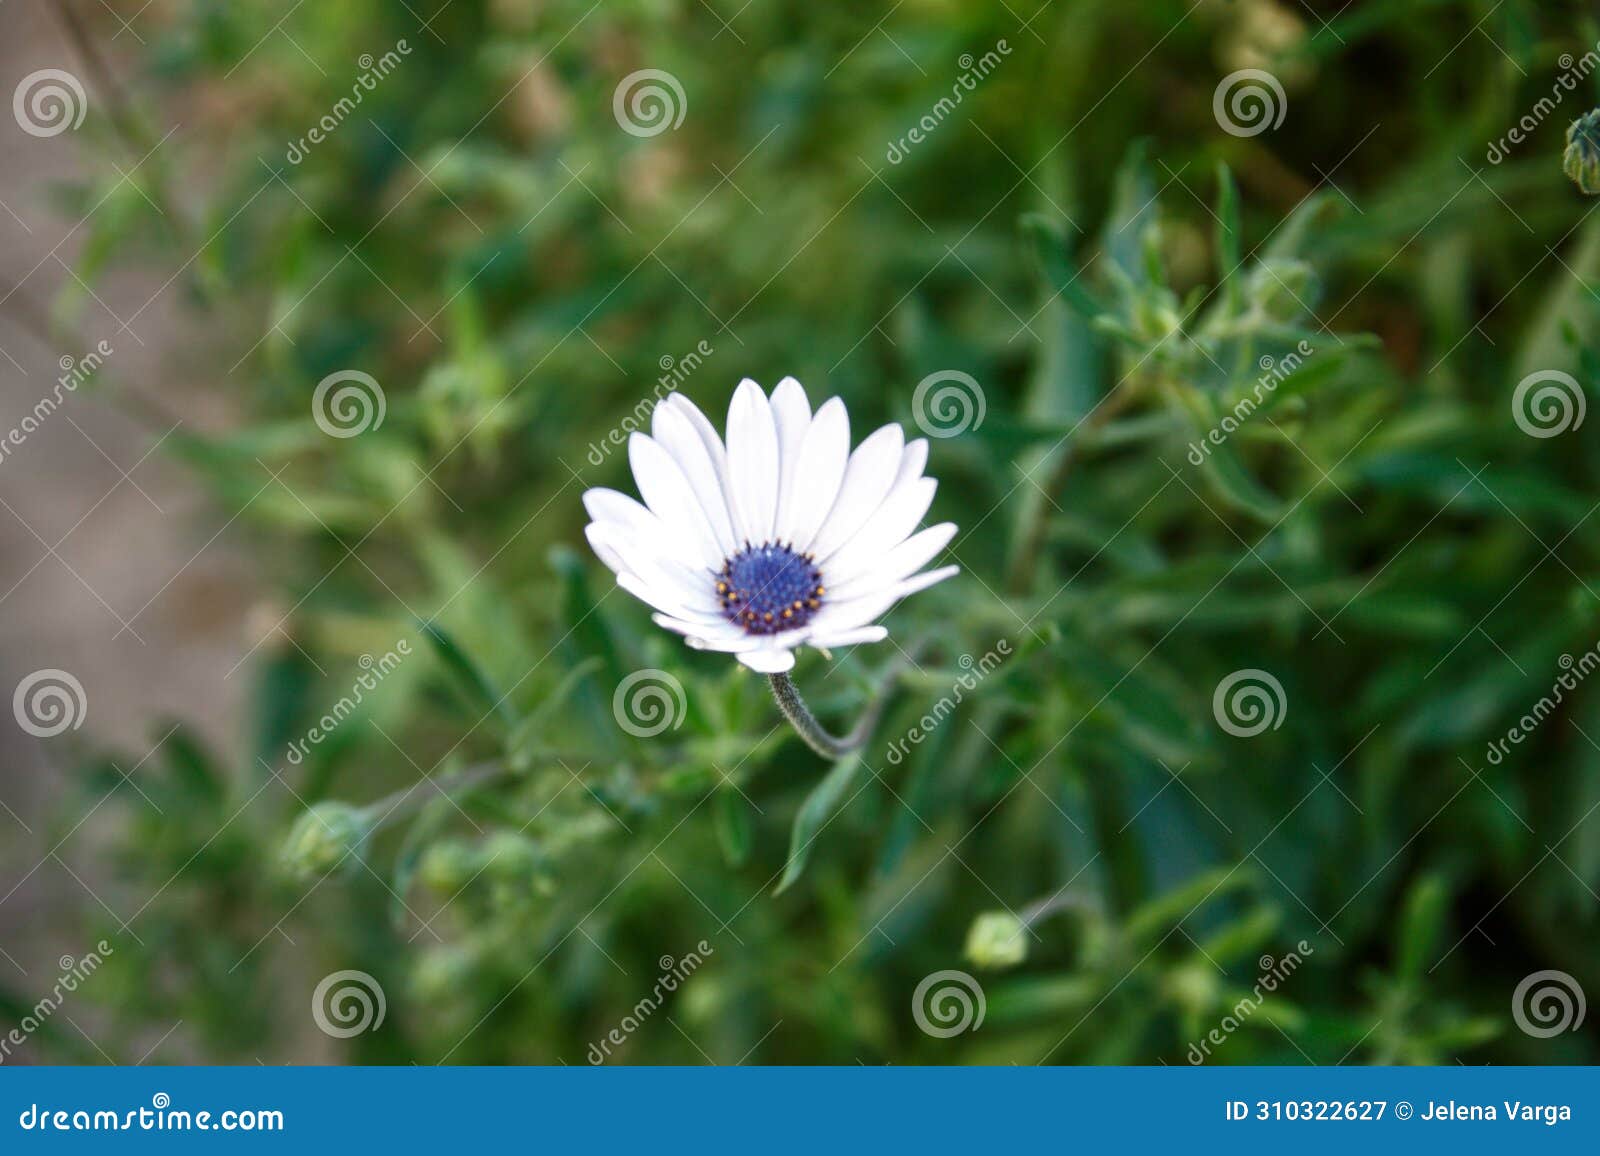 white flower with purple polen